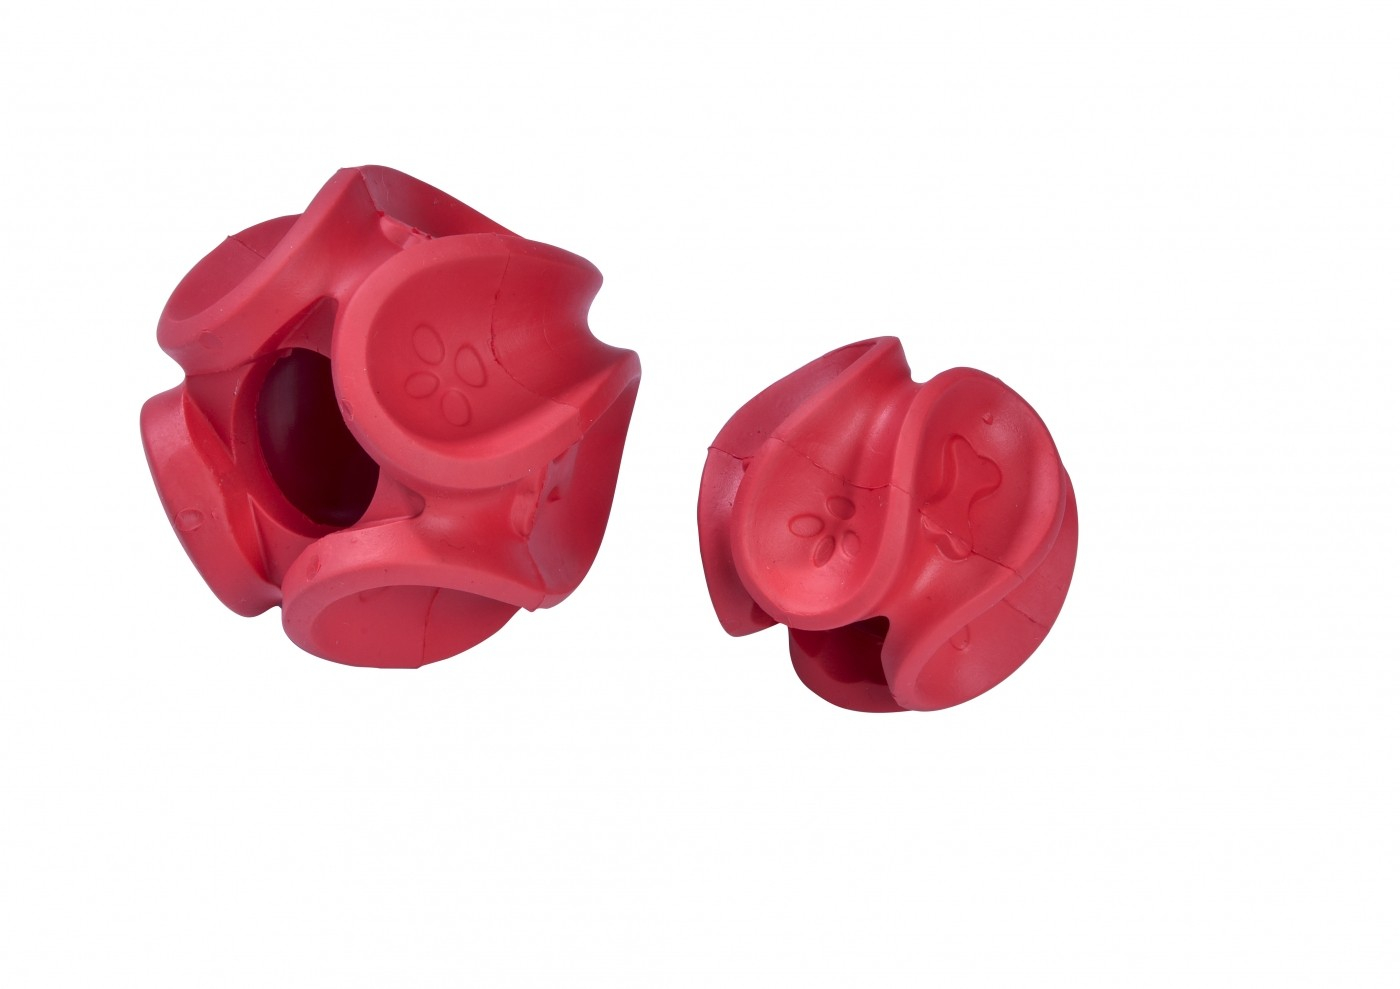 Dental Hundespielzeug Wave BOBBY - Erhältlich in 3 Farben und 2 Größen